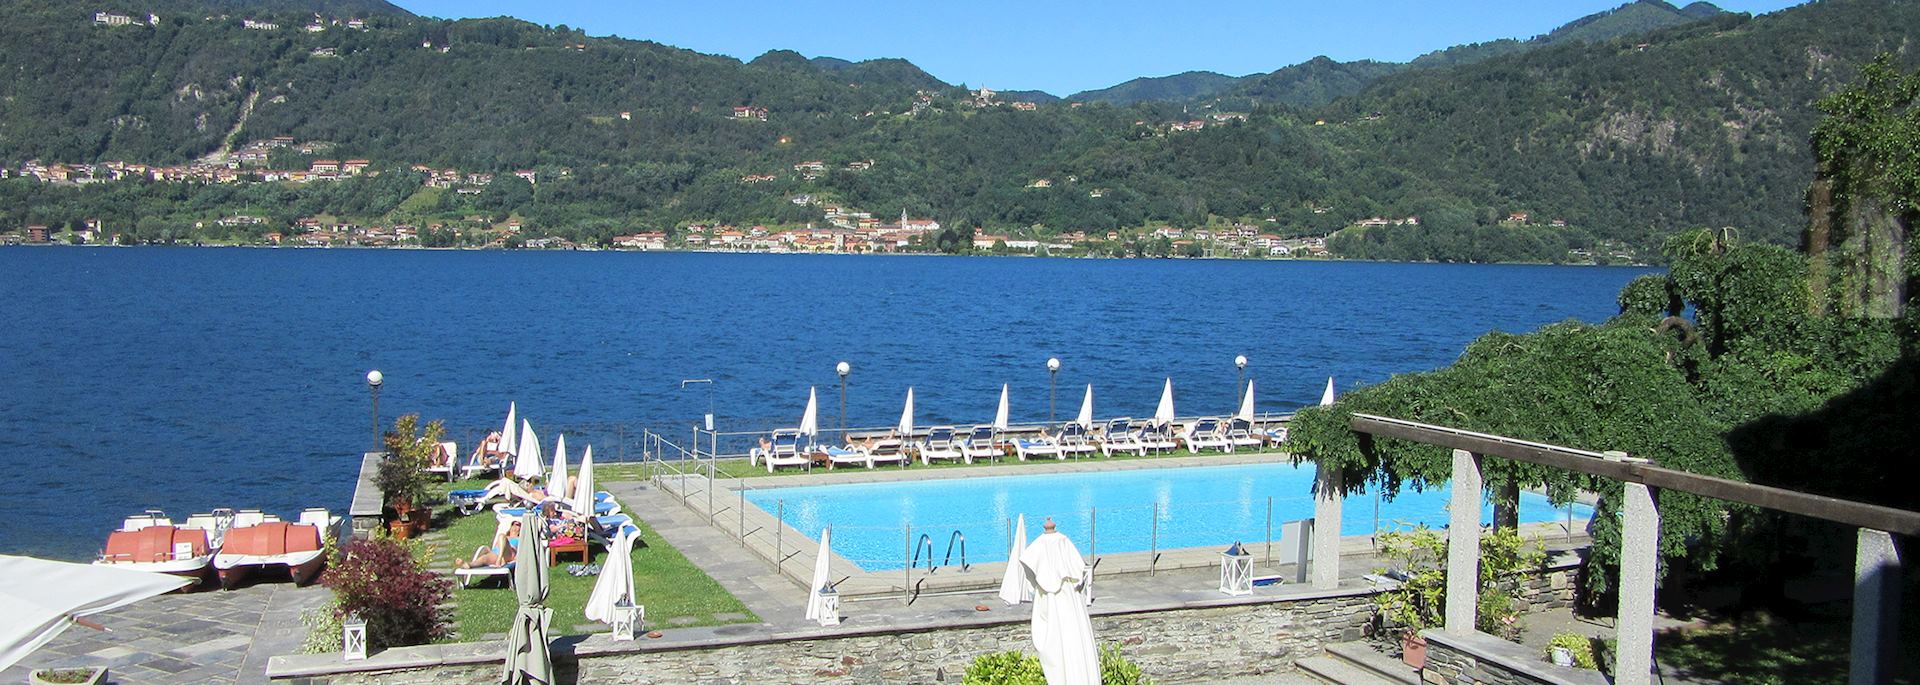 Hotel San Rocco, Lake Orta